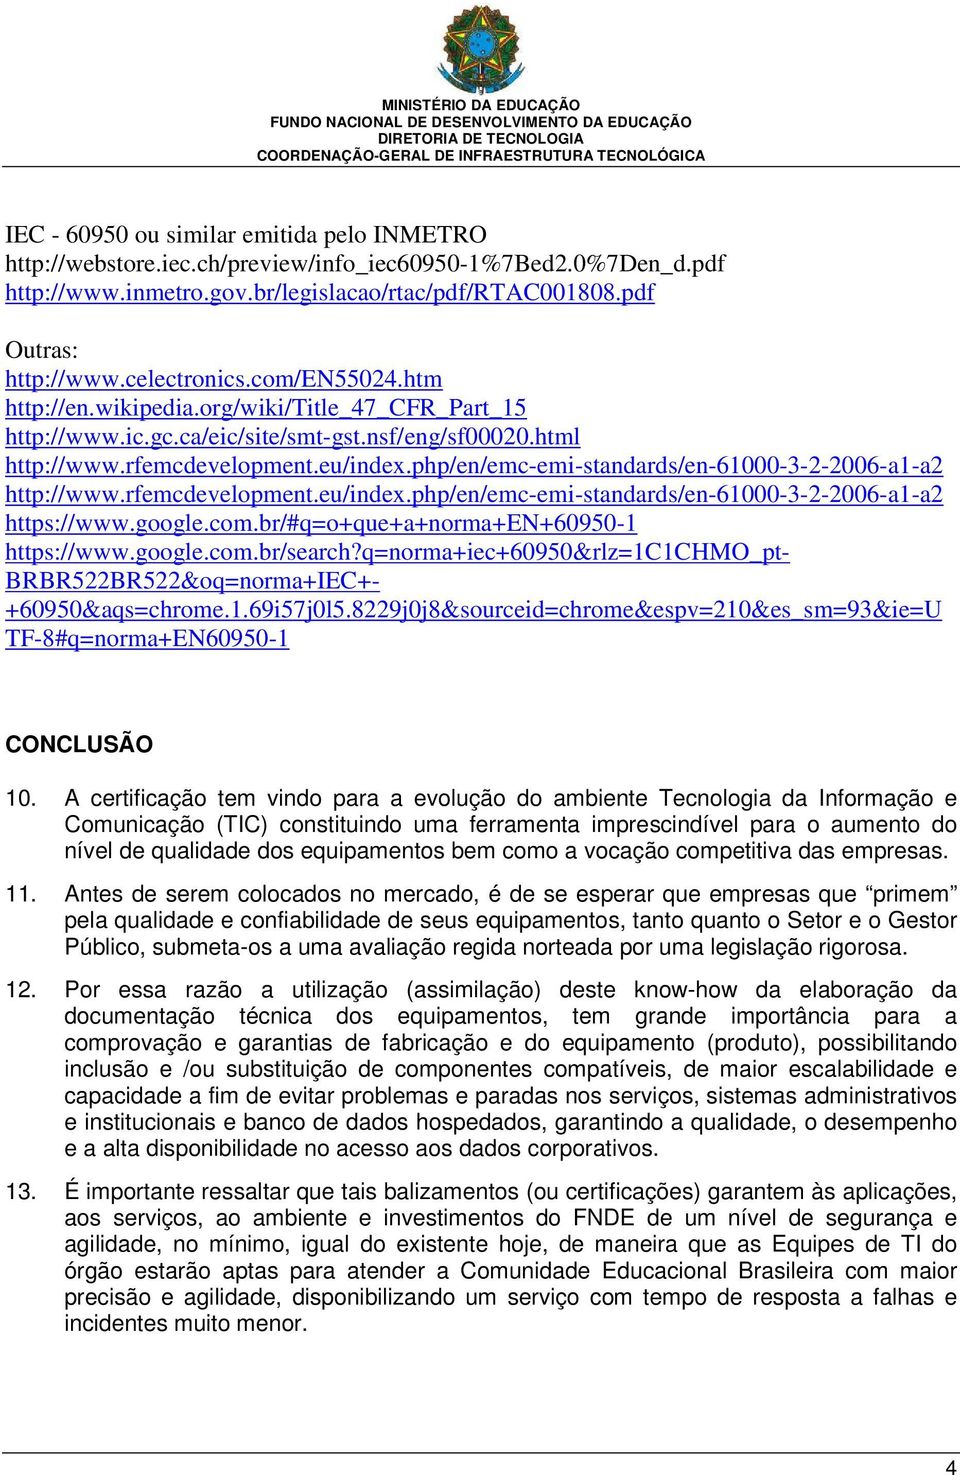 php/en/emc-emi-standards/en-61000-3-2-2006-a1-a2 http://www.rfemcdevelopment.eu/index.php/en/emc-emi-standards/en-61000-3-2-2006-a1-a2 https://www.google.com.